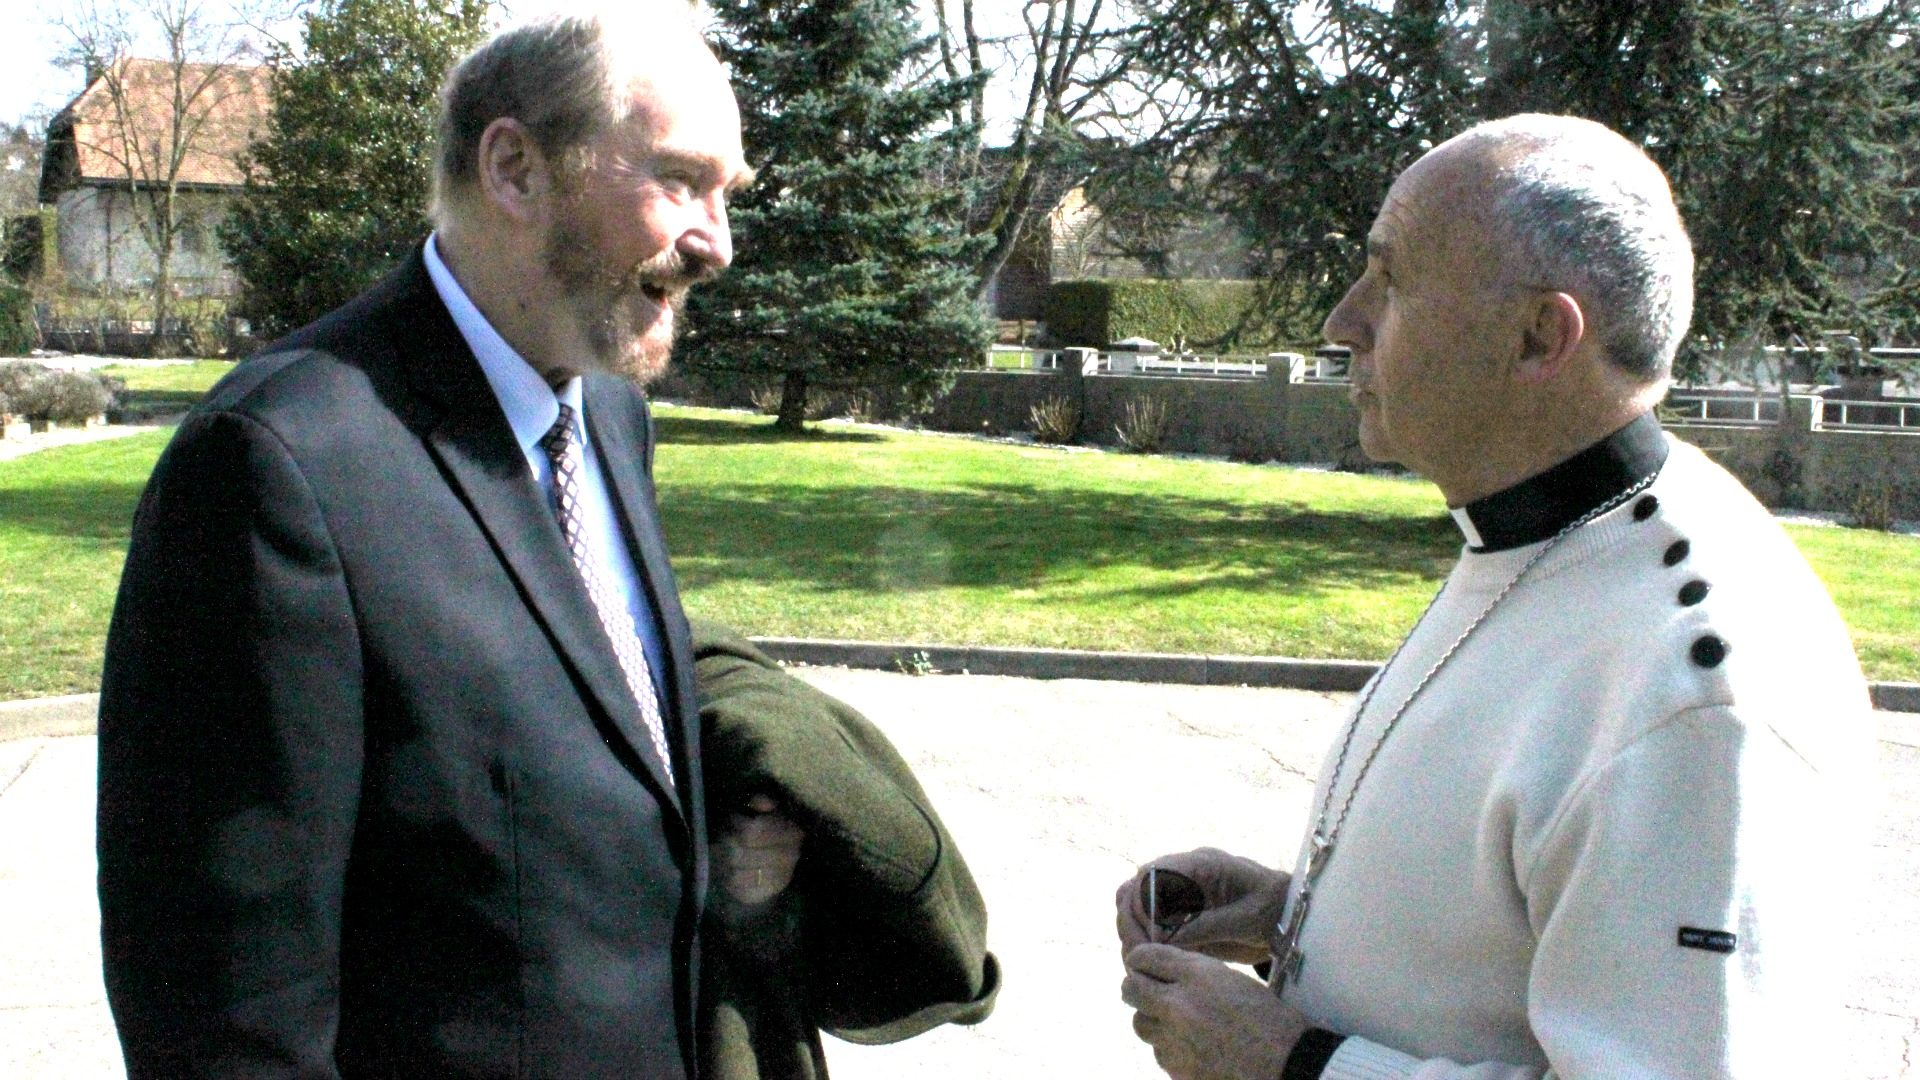 Mgr Robert Le Gall, archevêque de Toulouse, accueilli à Philanthropos par l’archiduc Rodolphe d’Autriche, président de la Fondation Philanthropos (Photo: Bernard Litzler)